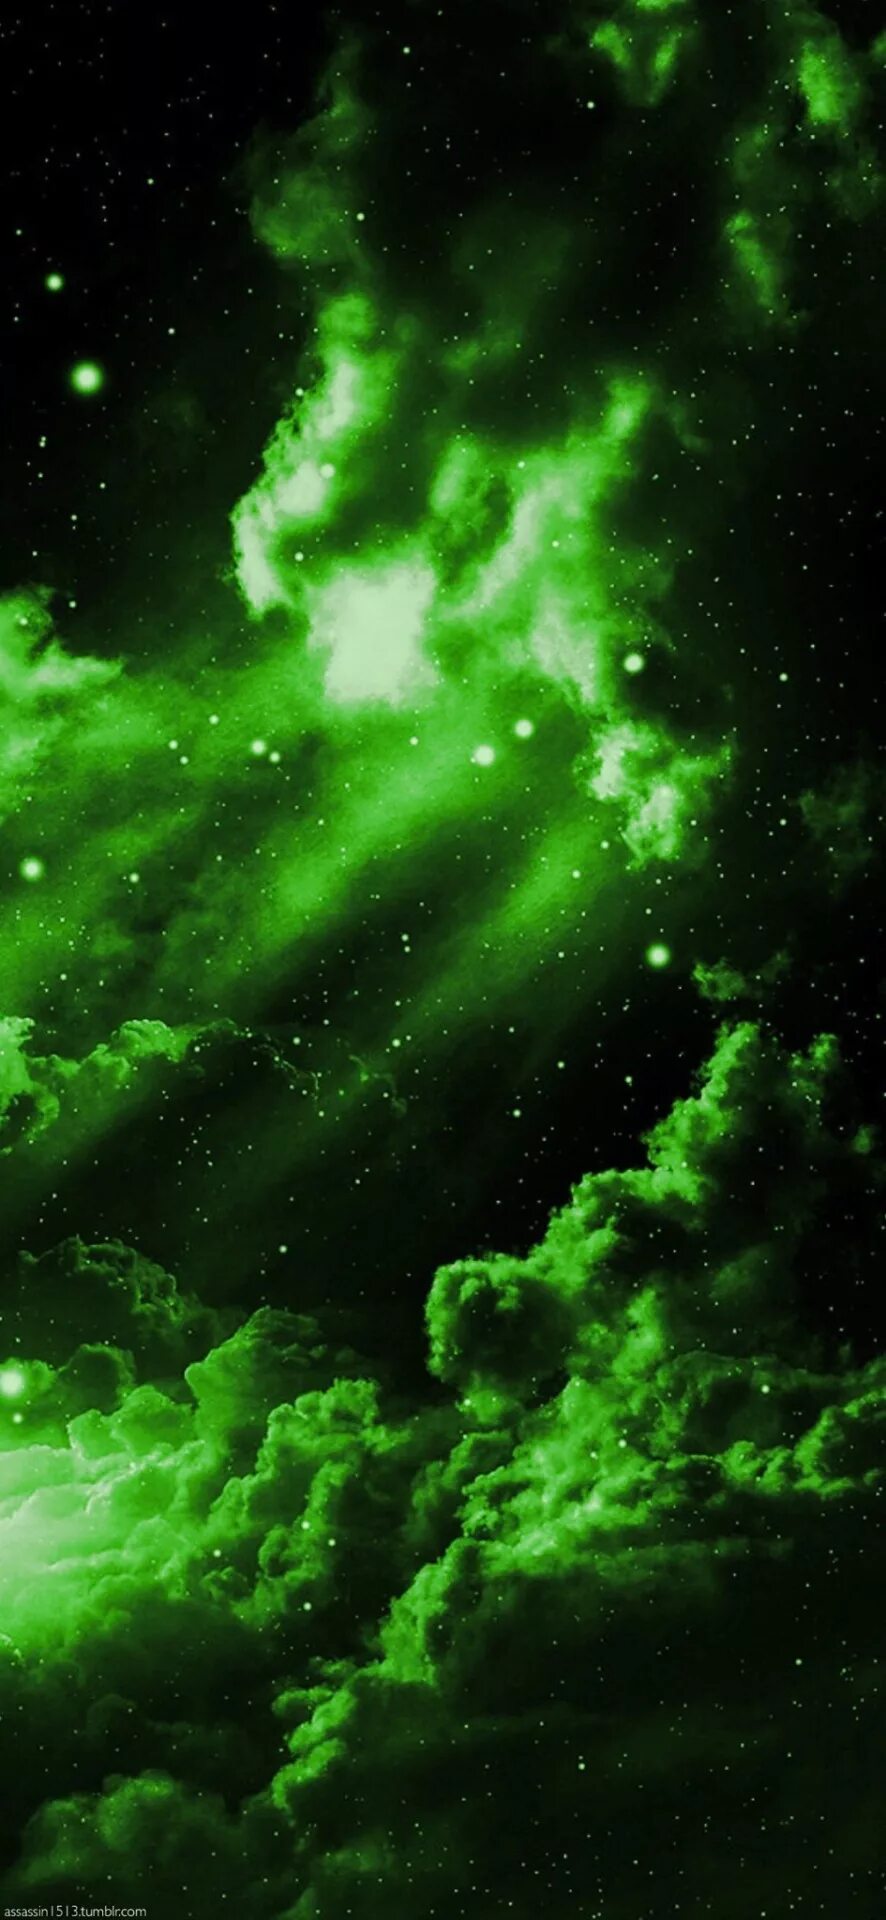 Черно зеленый космос. Космос в зелёном цвете. Космос звезды черно зеленый. Ядовитый космос. Атмосфера космос зеленый цвет.